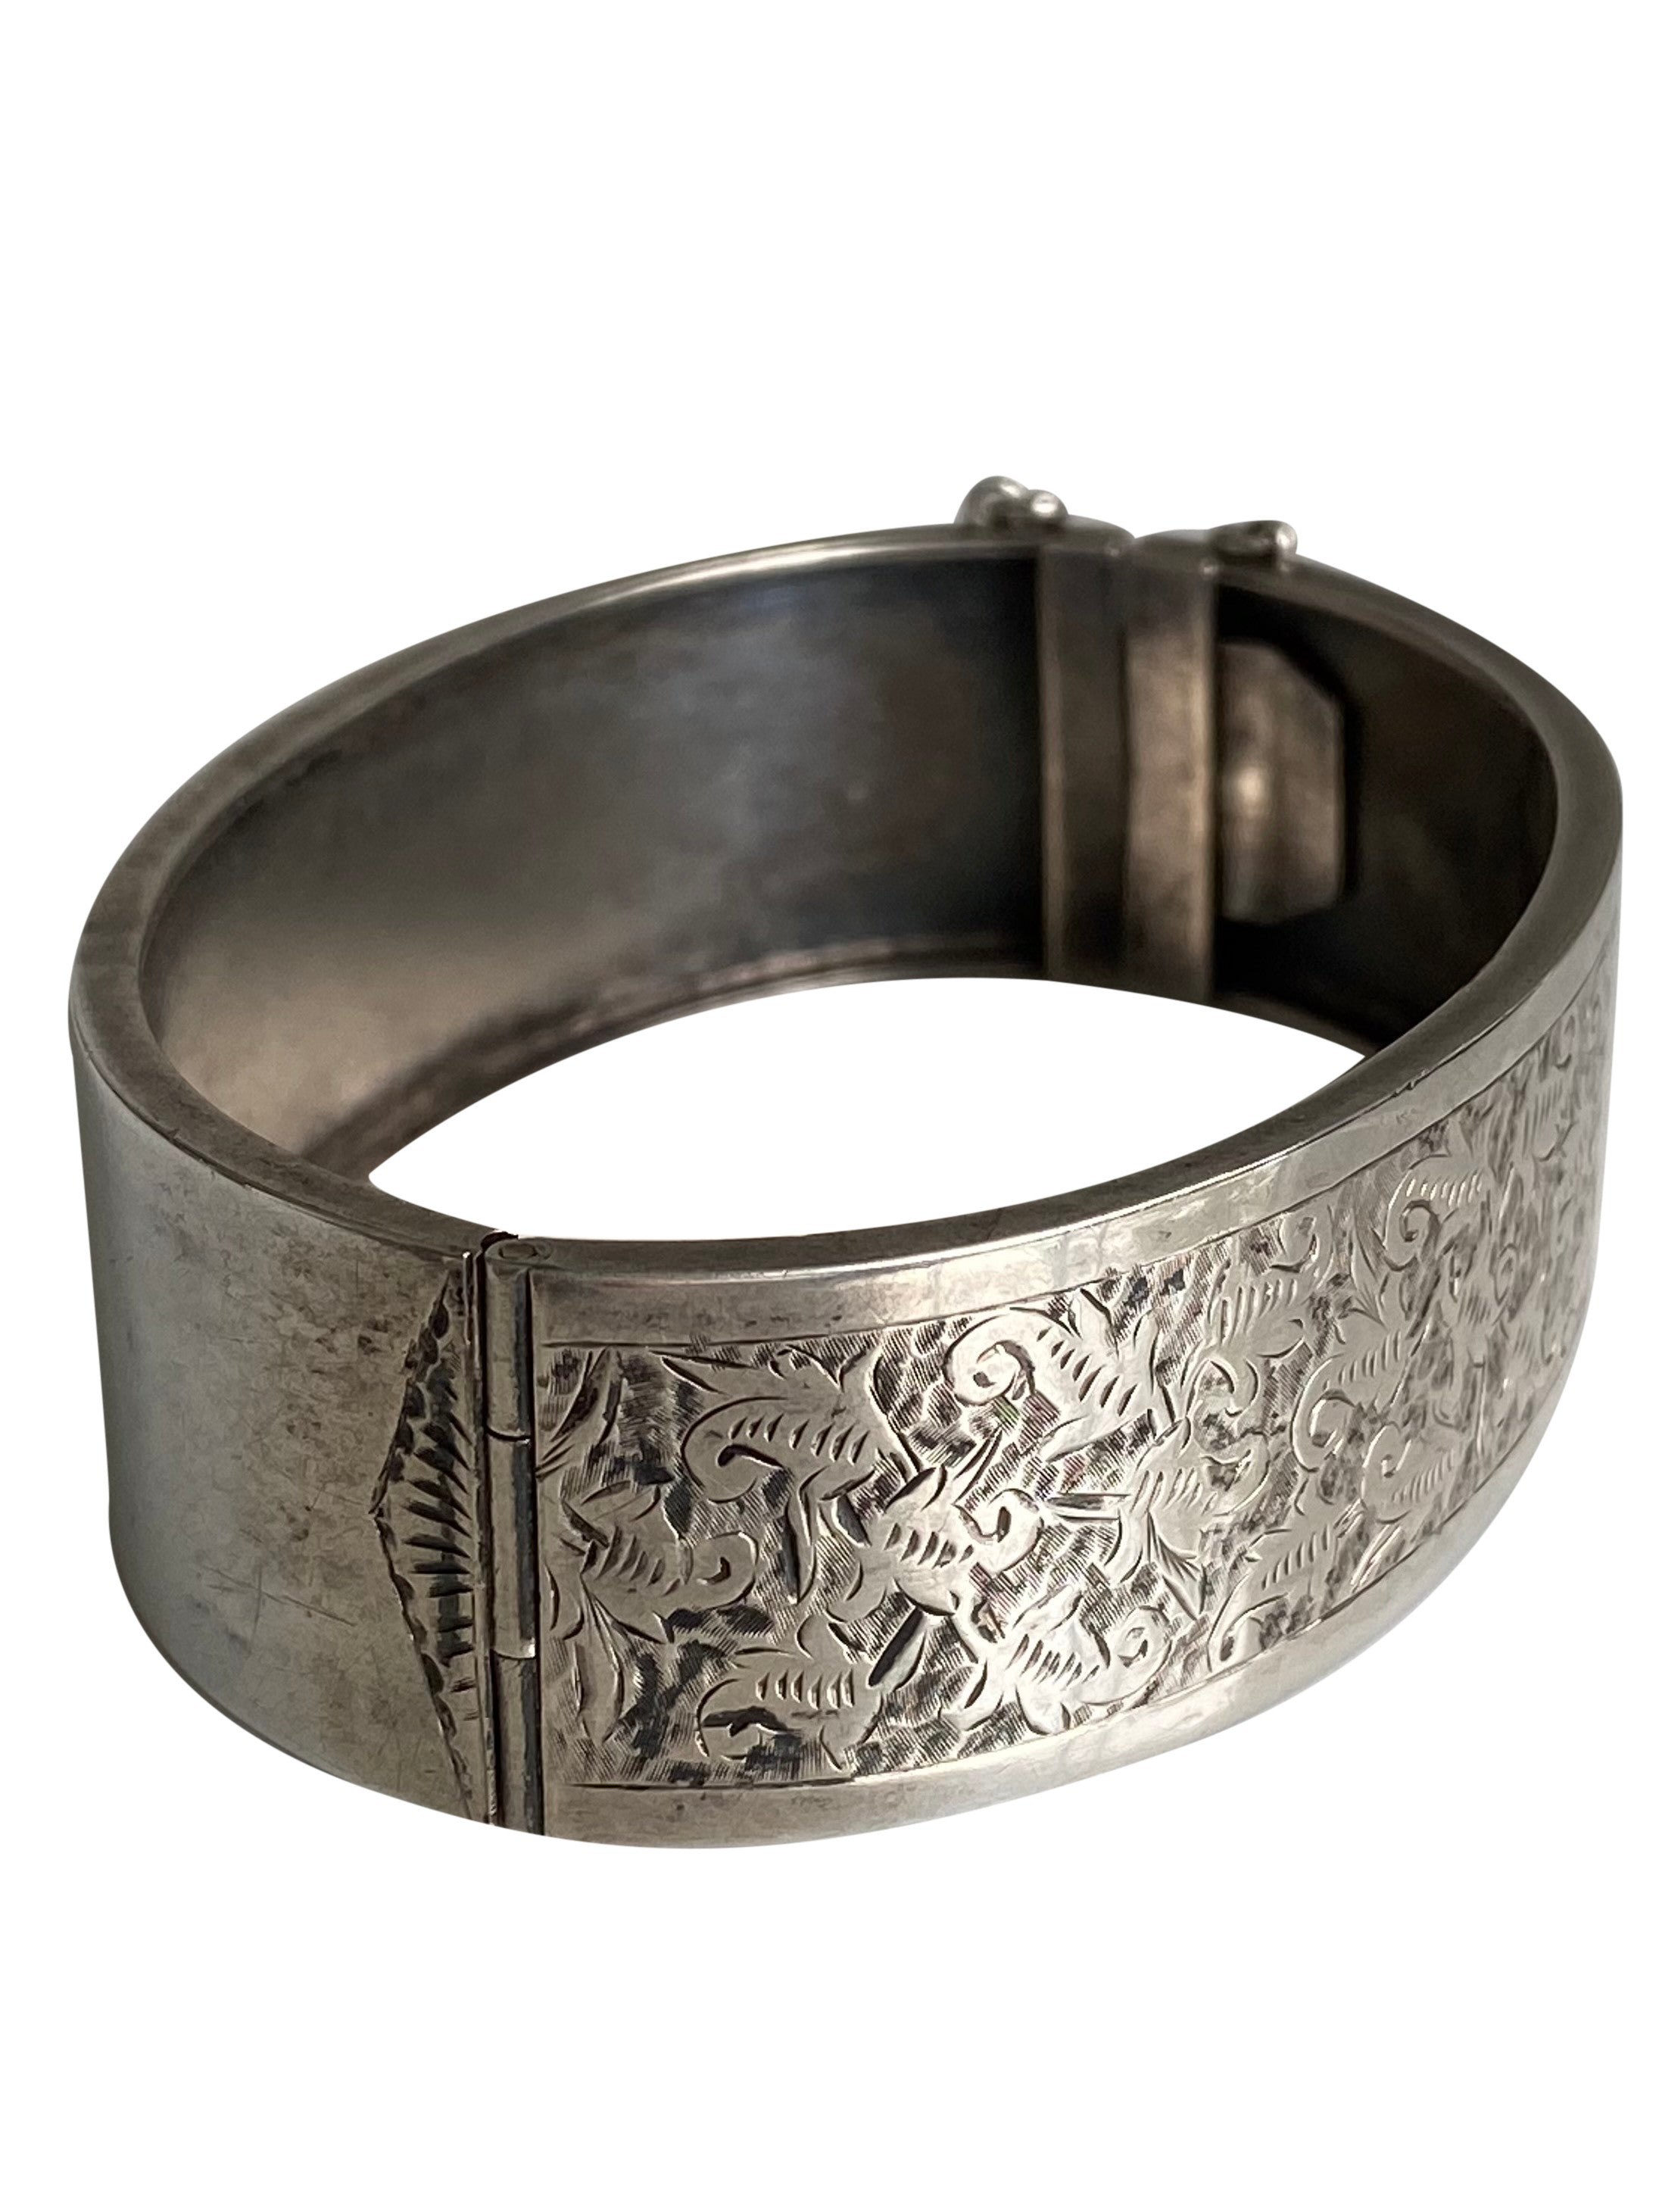 Antique Victorian Silver Cuff Bangle, 1880’s